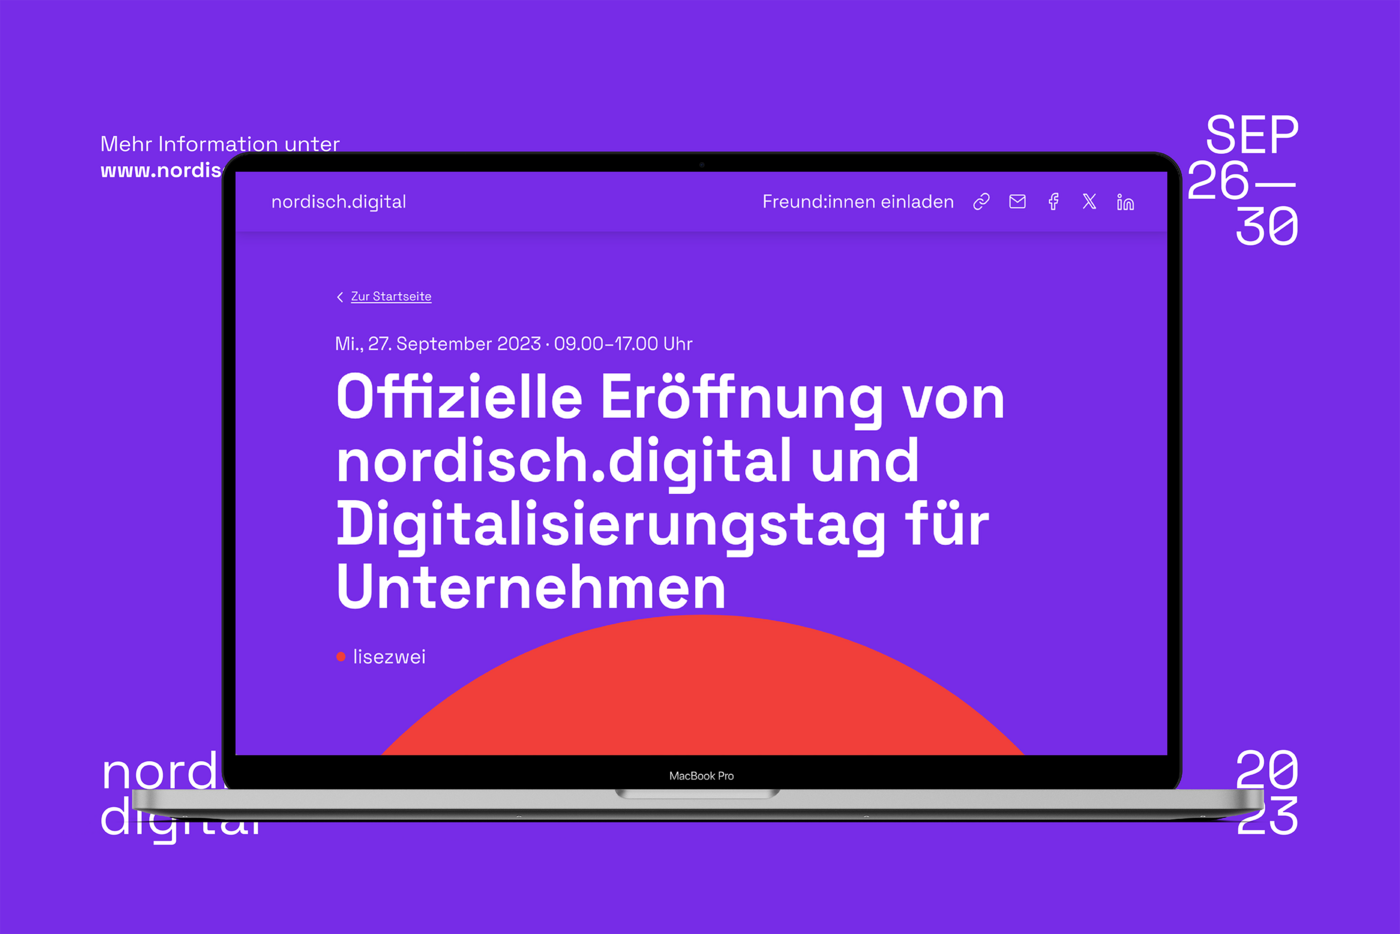 Auf violettem Hintergrund gibt der Monitor eines Macbook Pro die Eröffnung von nordisch.digital mitsamt aller relevanten Daten bekannt.